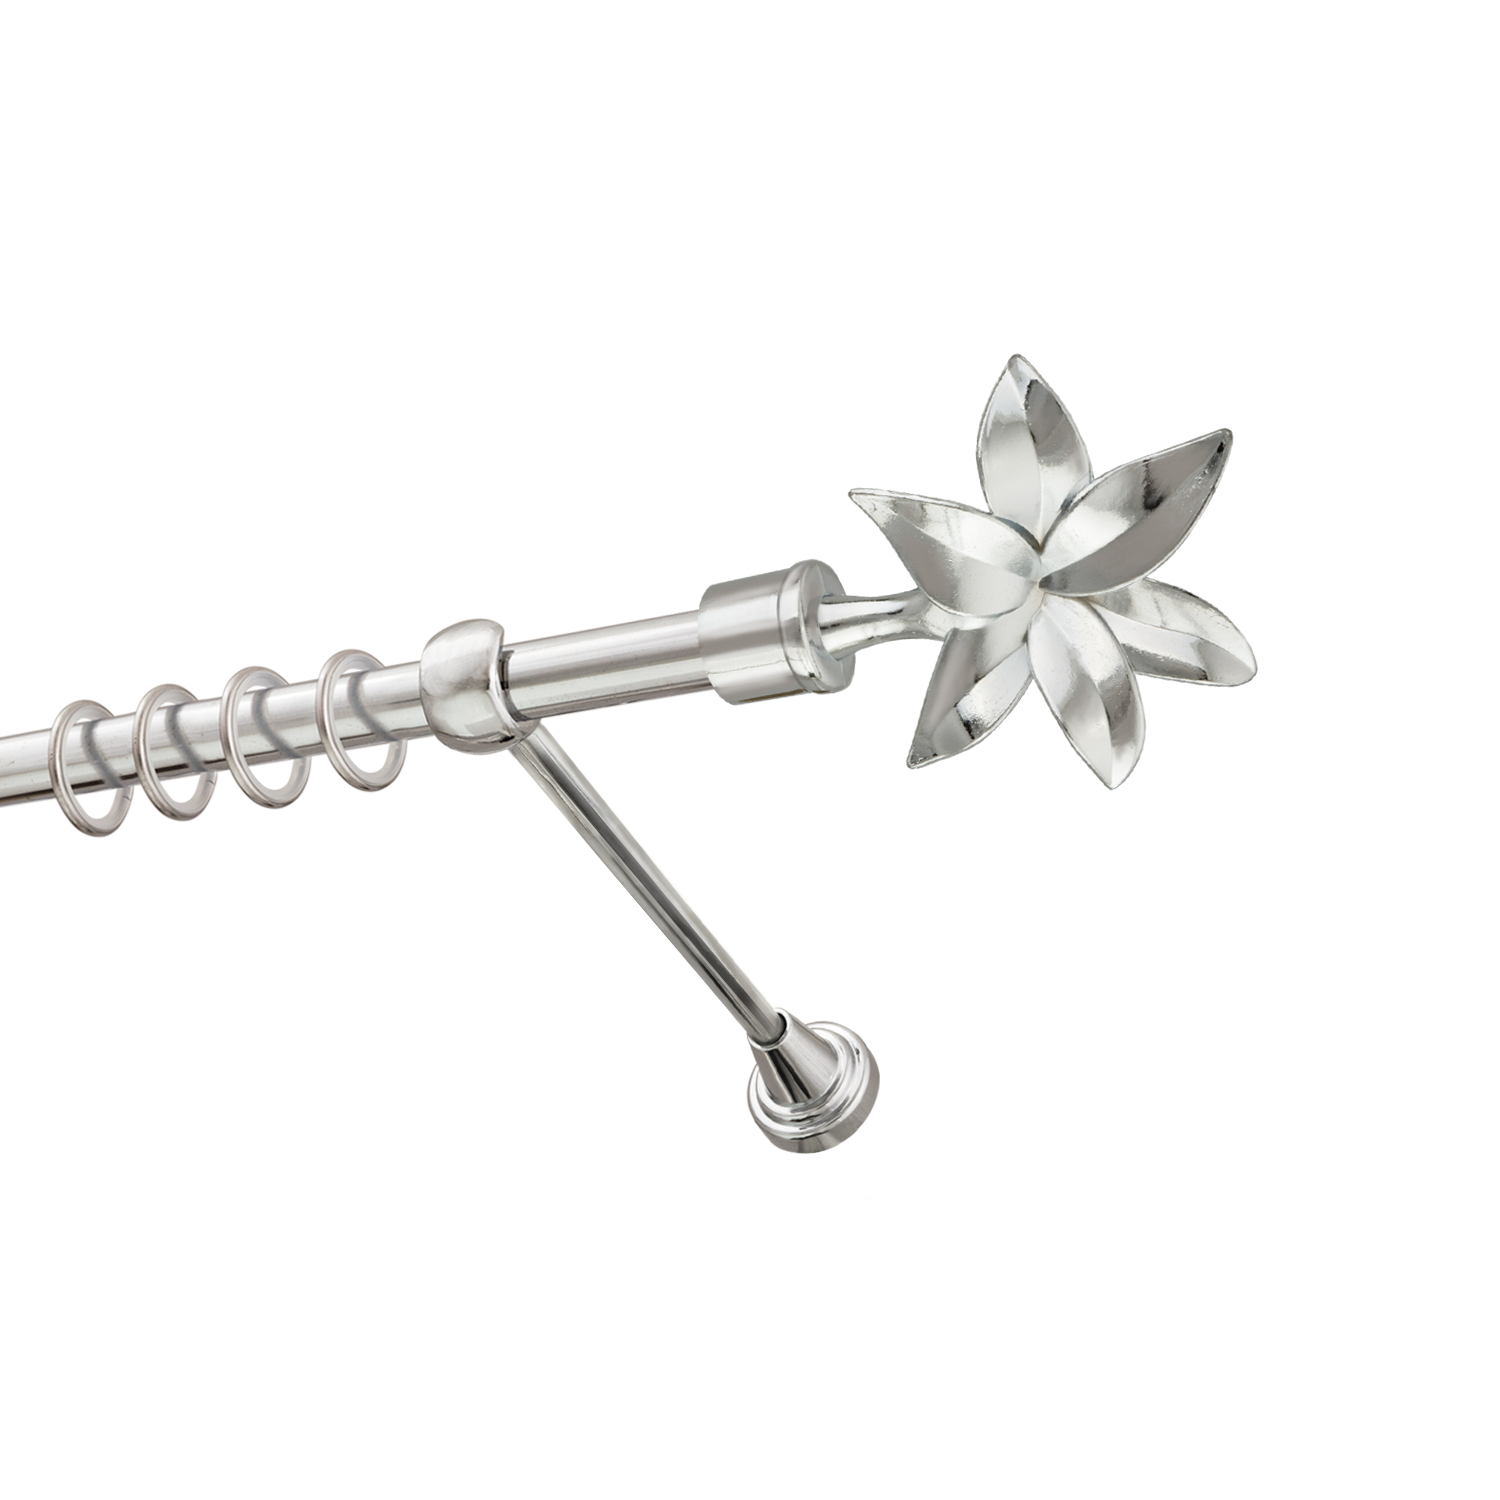 Металлический карниз для штор Магнолия, однорядный 16 мм, серебро, гладкая штанга, длина 180 см - фото Wikidecor.ru